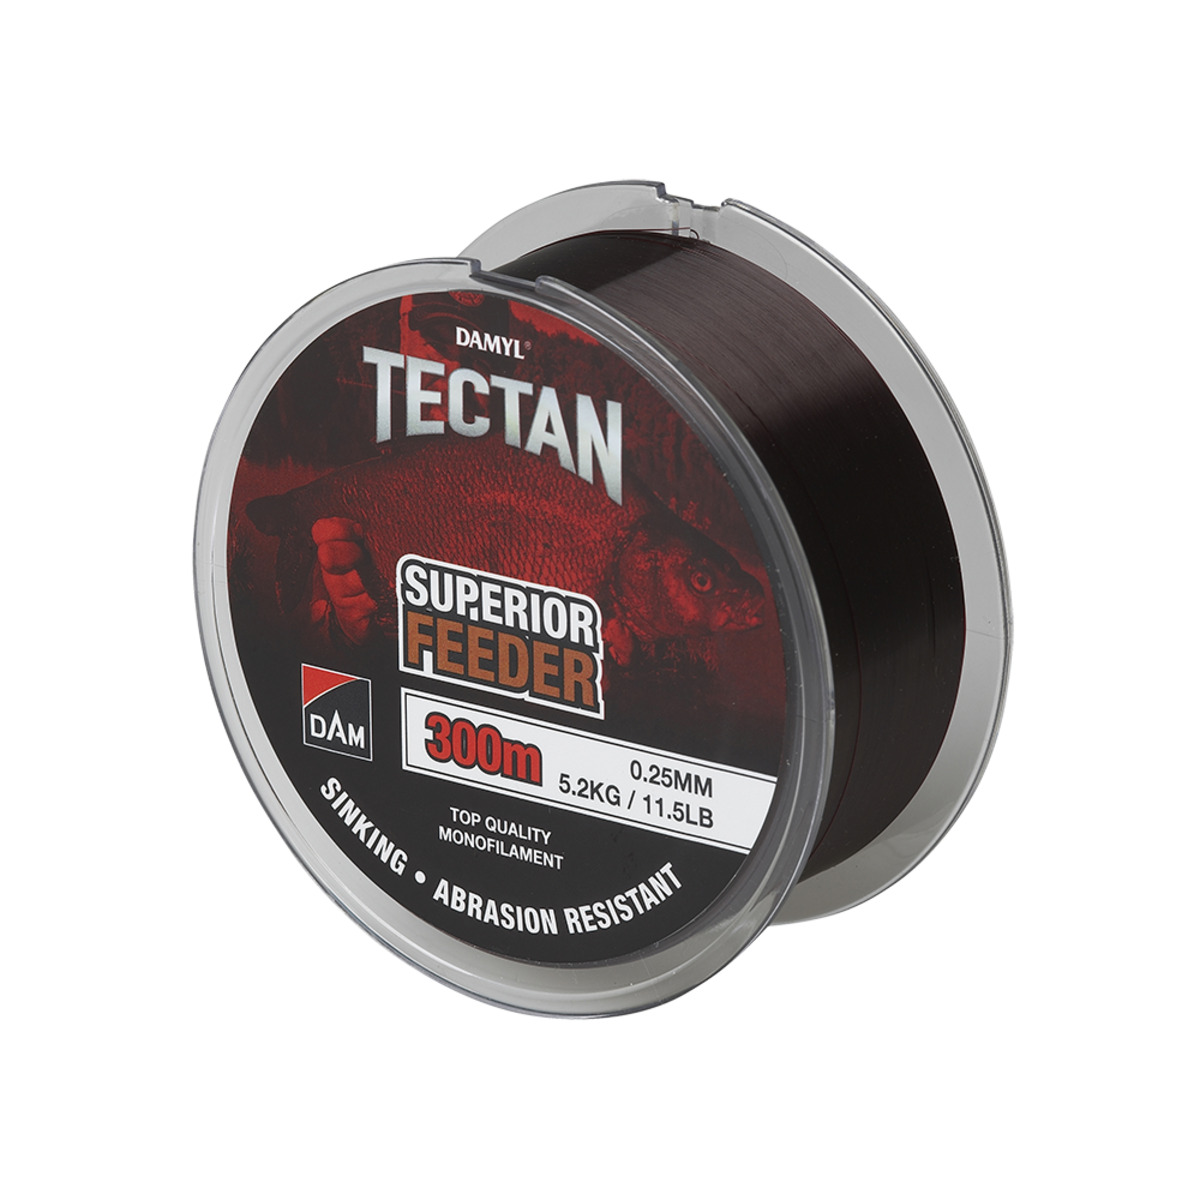 Dam Tectan Superior Feeder 300m - 0.23MM 4.2KG 9.2LBS BROWN